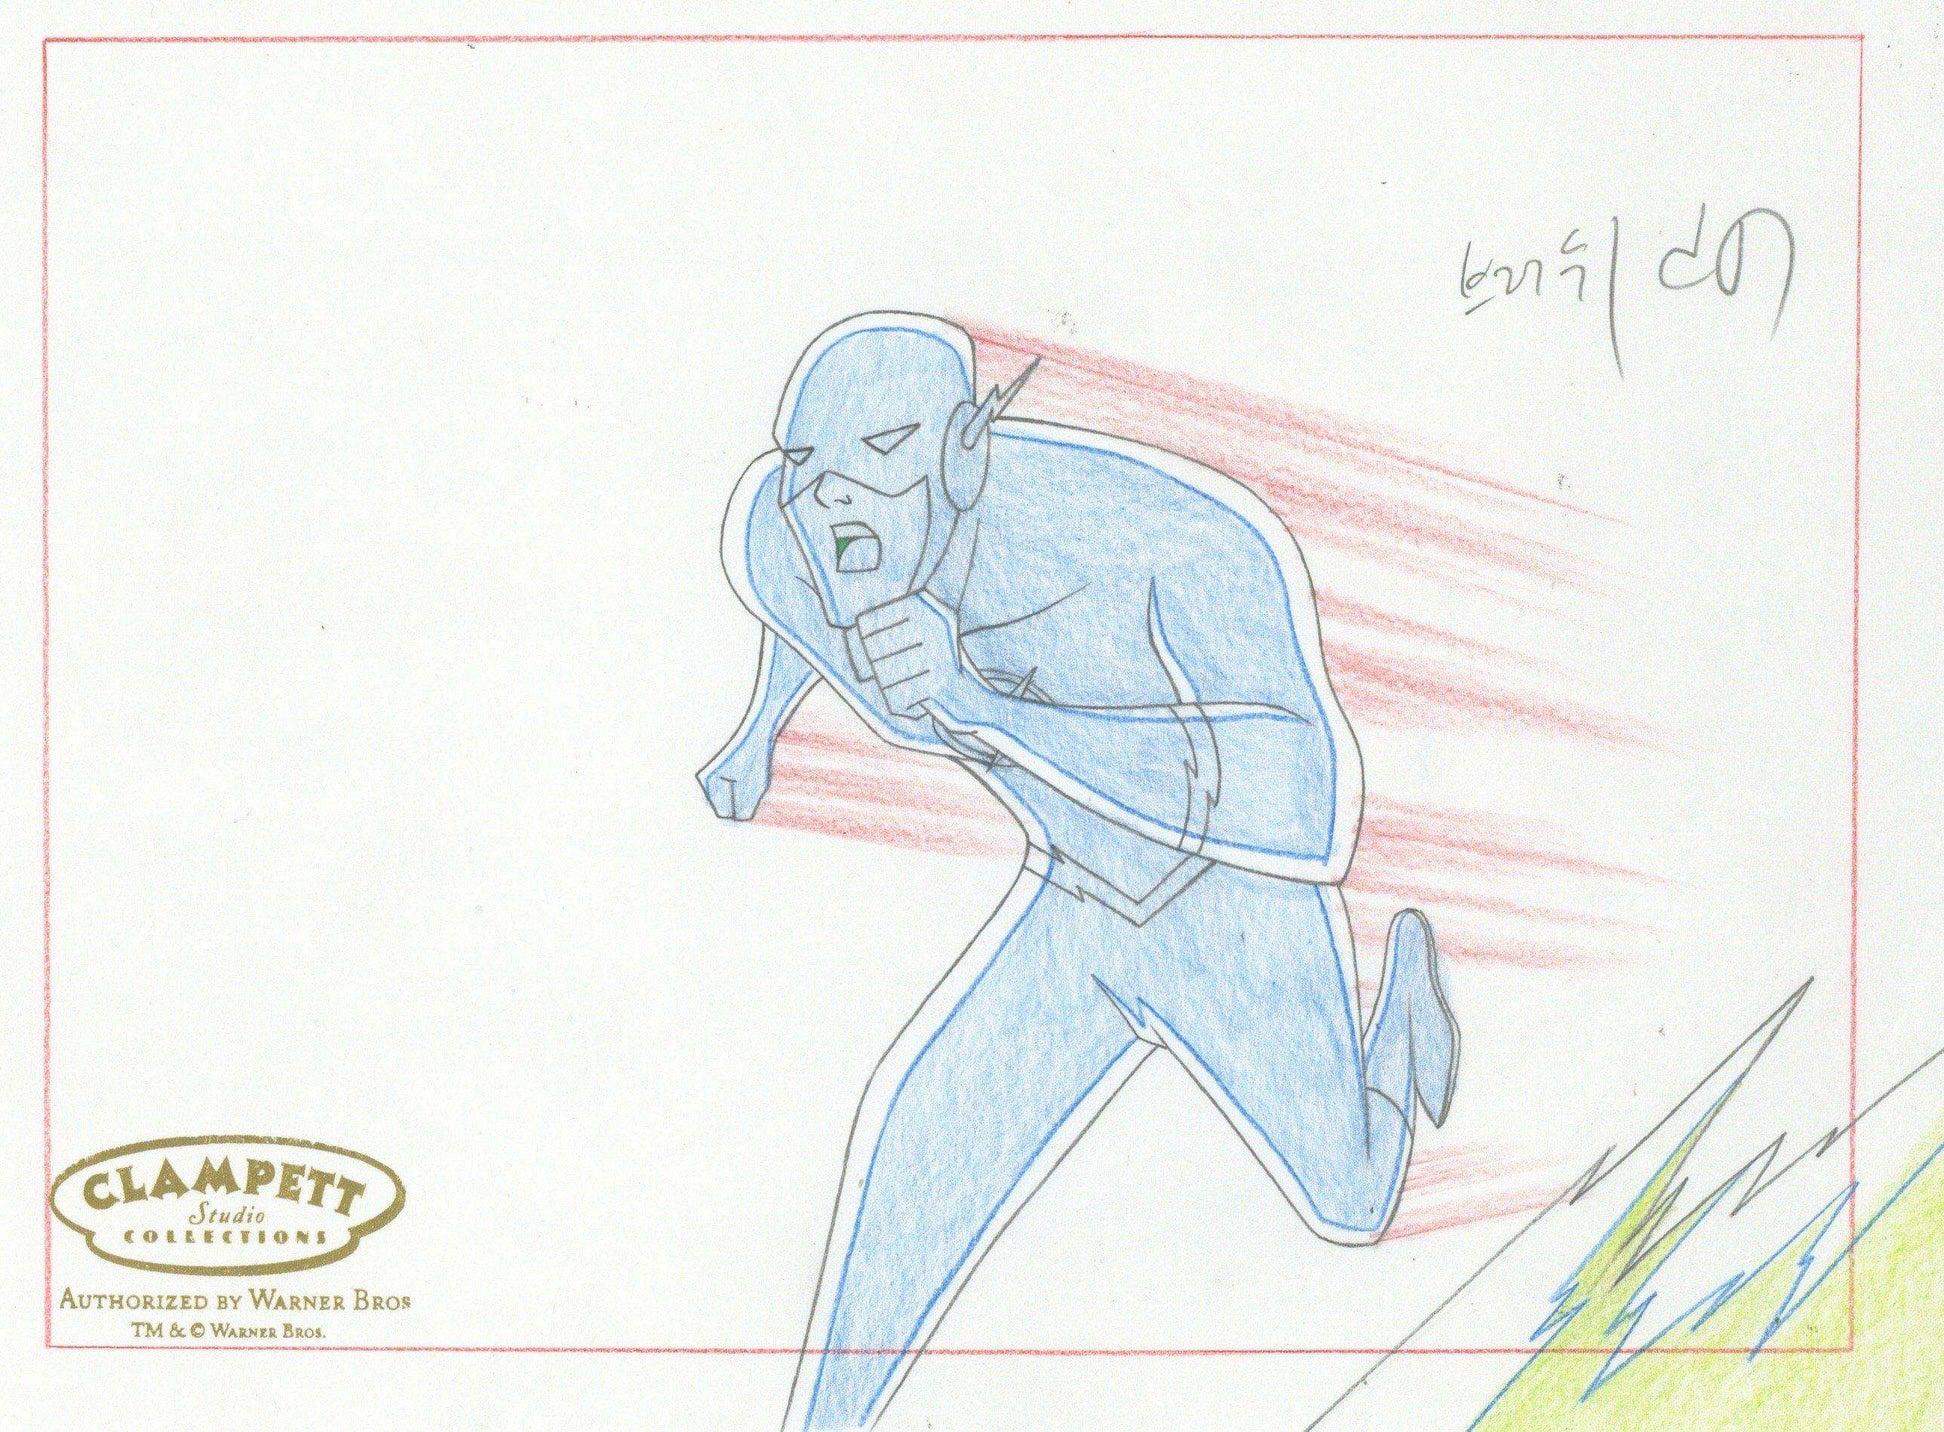 Justice League Original-Produktionszeichnung der Justice League: Die Flash – Art von DC Comics Studio Artists